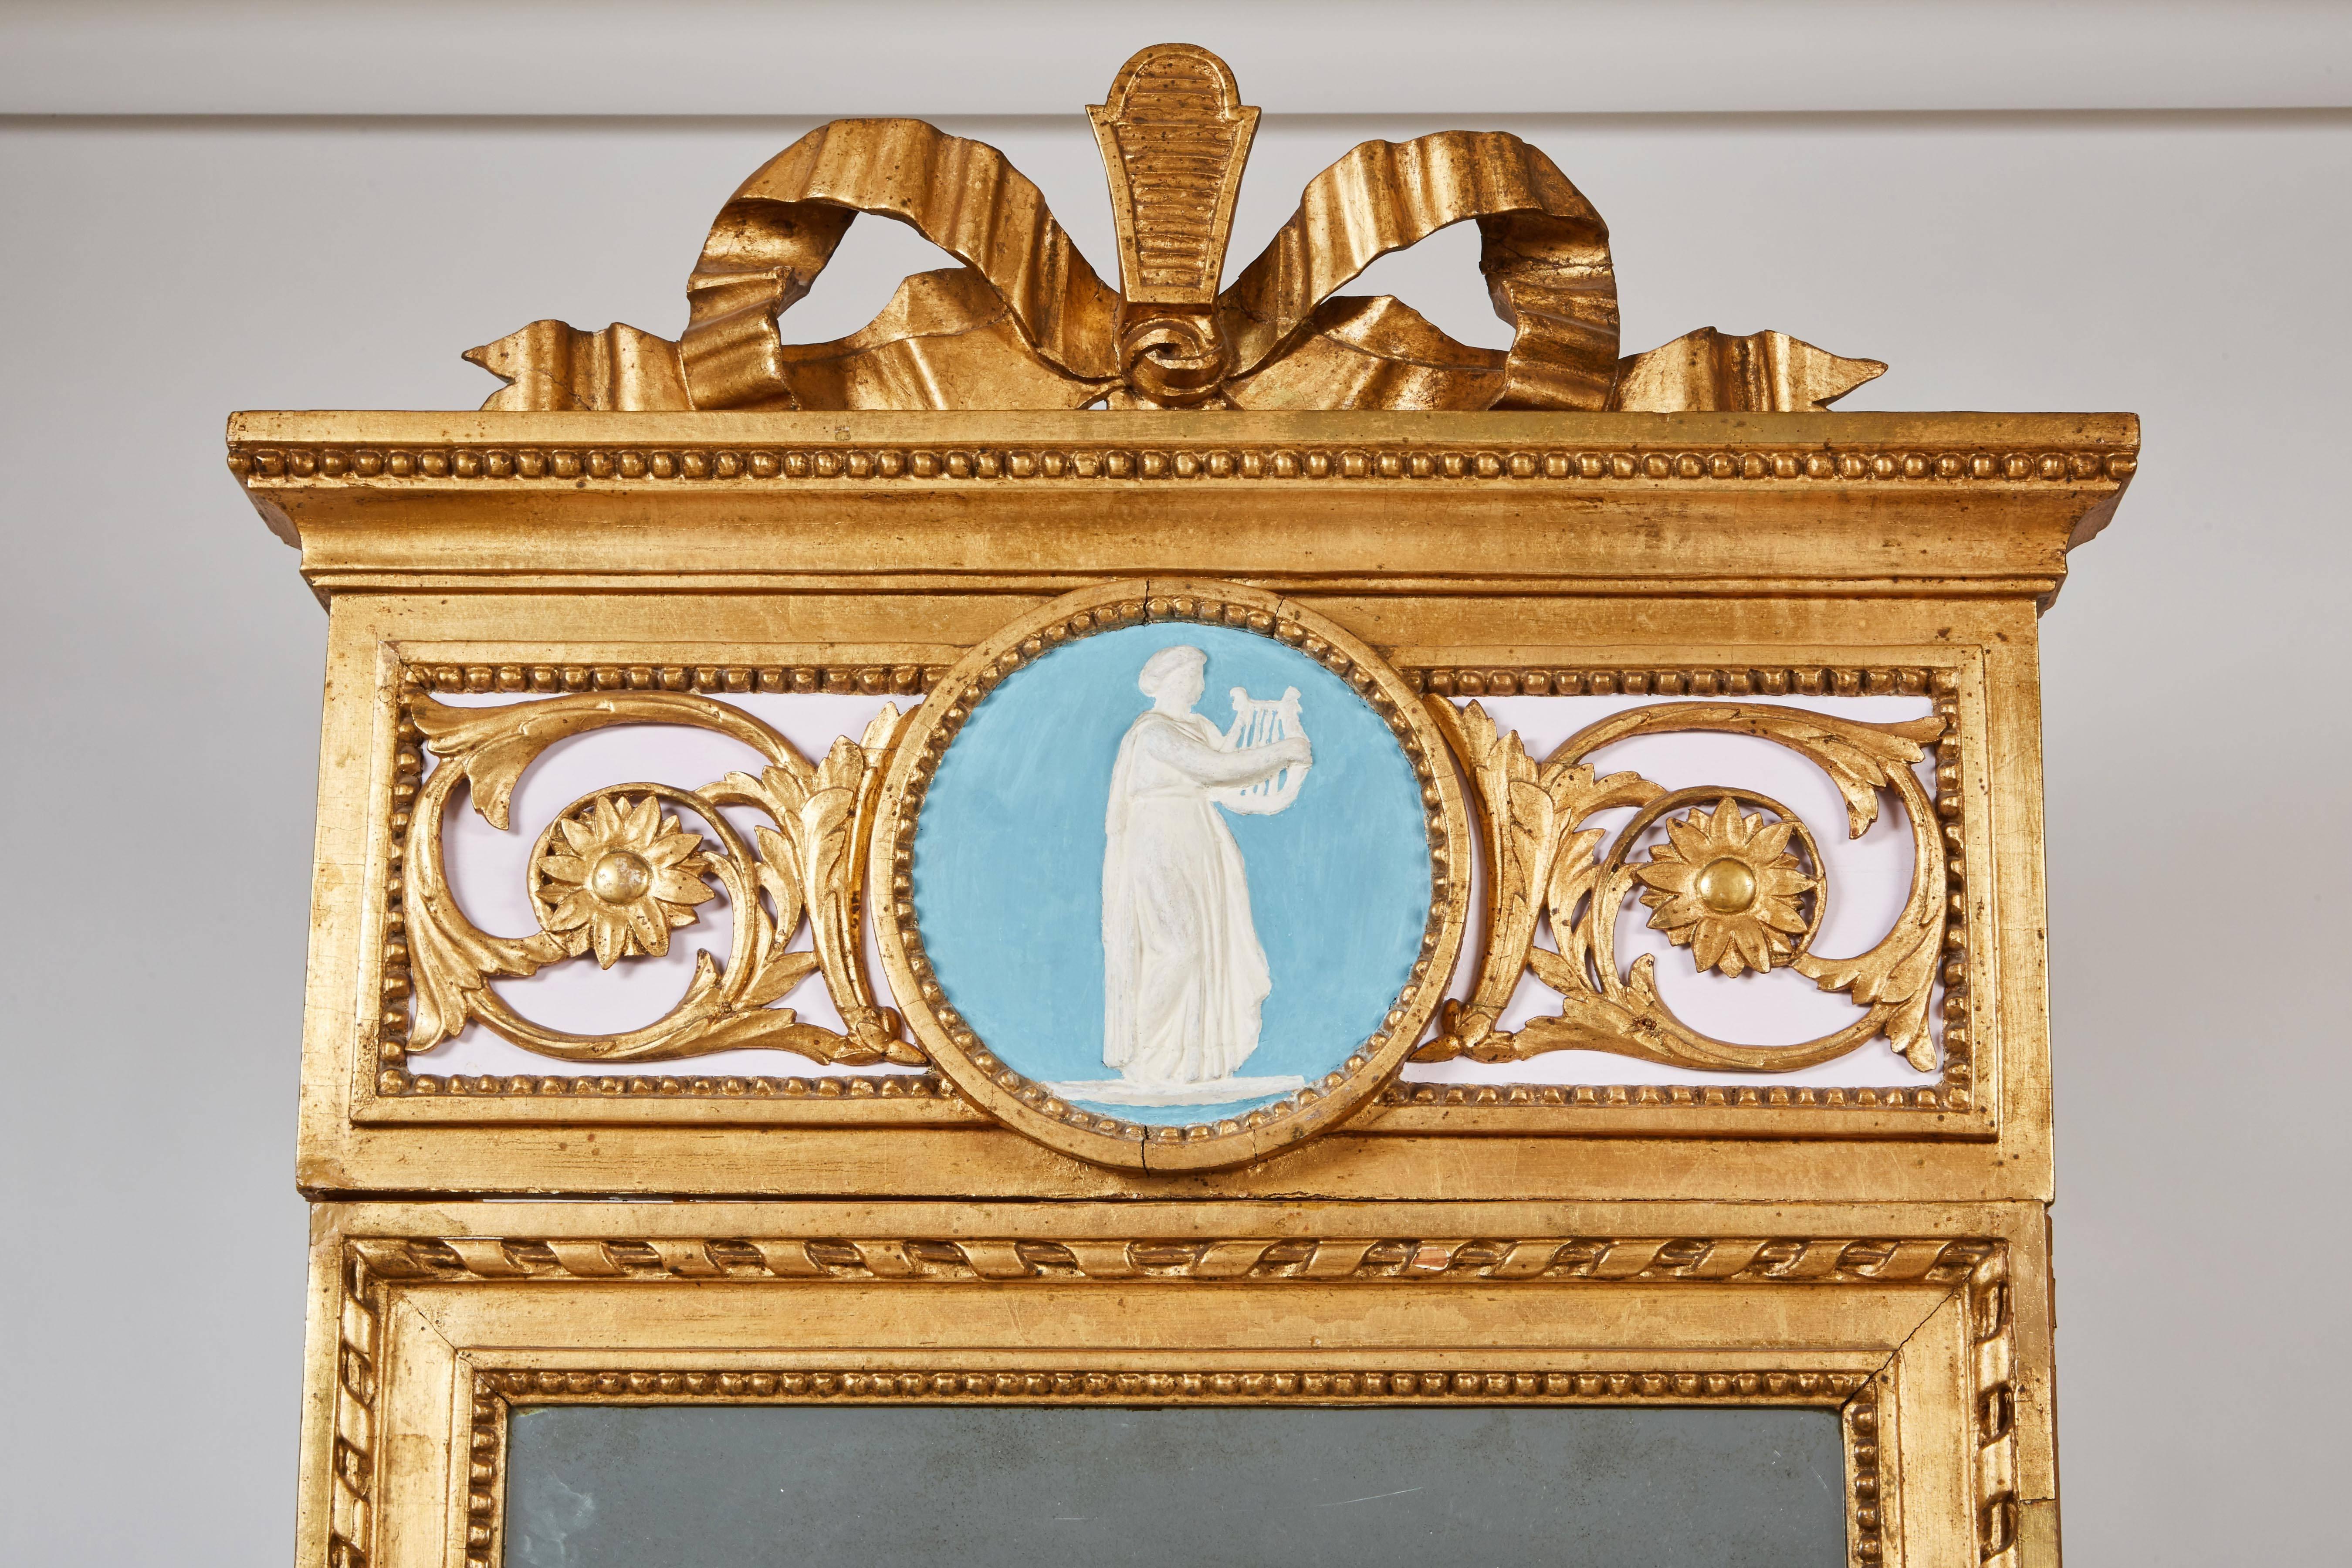 La console avec un plateau en marbre blanc veiné, la frise sculptée de motifs feuillagés et le médaillon central sur des pieds fuselés et cannelés. La plaque de miroir rectangulaire dans une bordure robée surmontée d'une crête supérieure